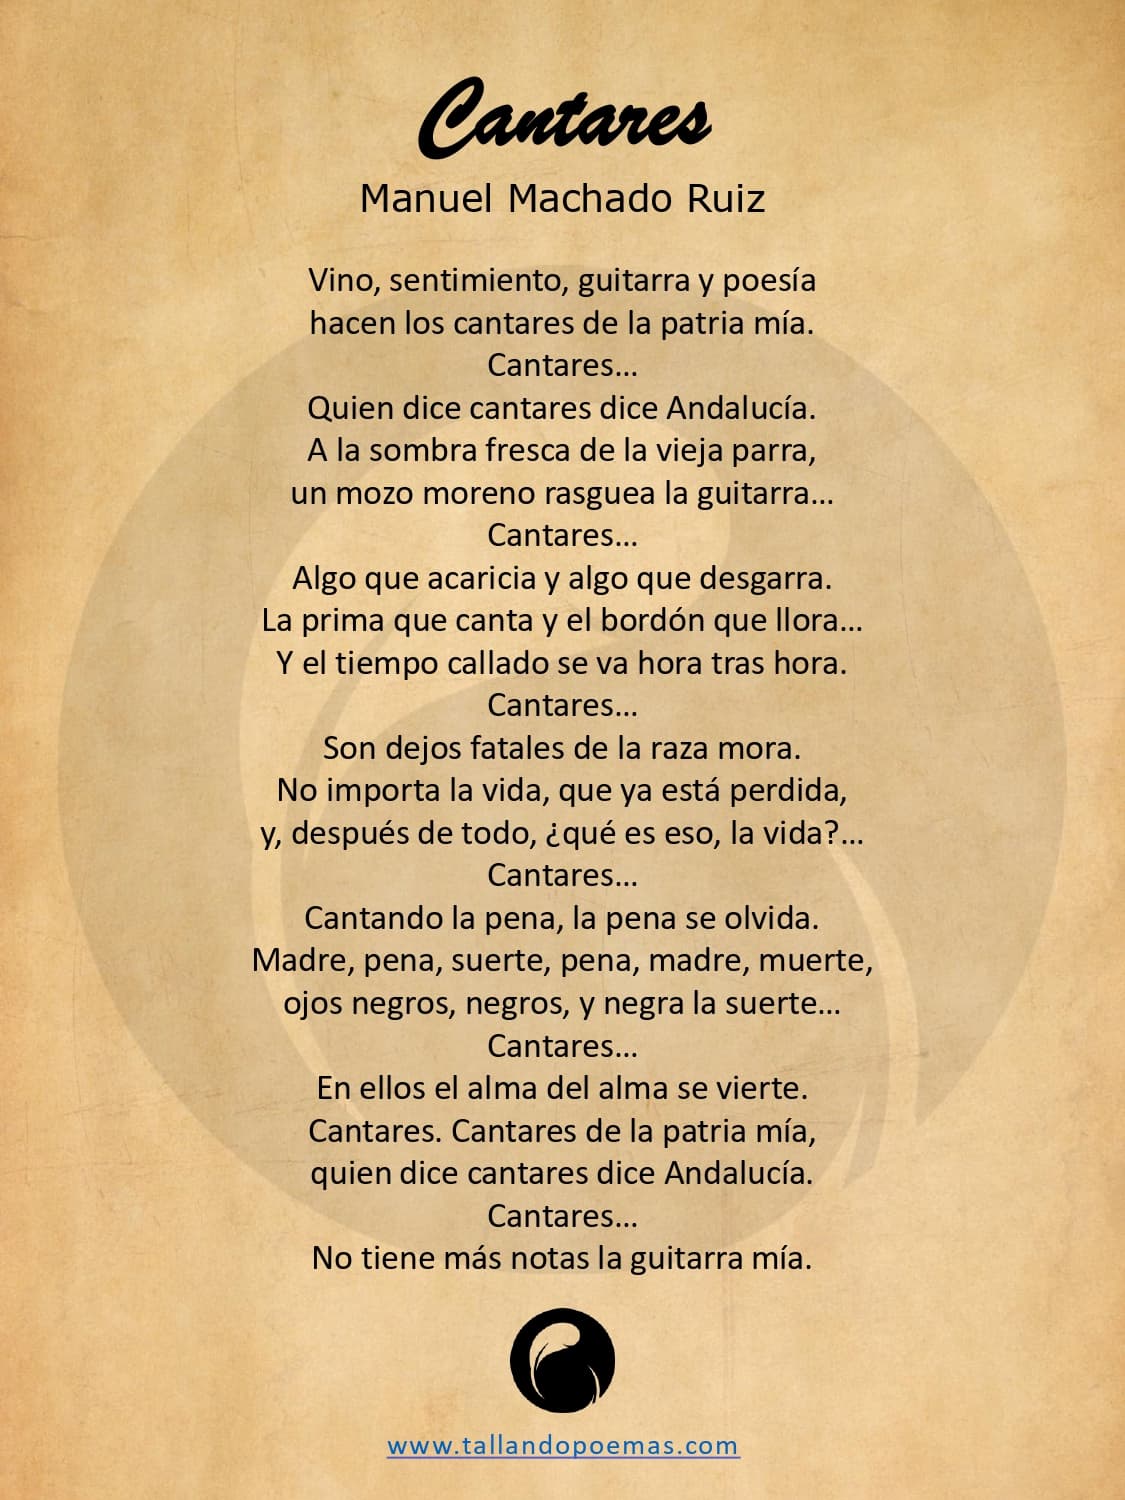 Descubre la belleza del epiteto en un poema: Ejemplos inspiradores en español